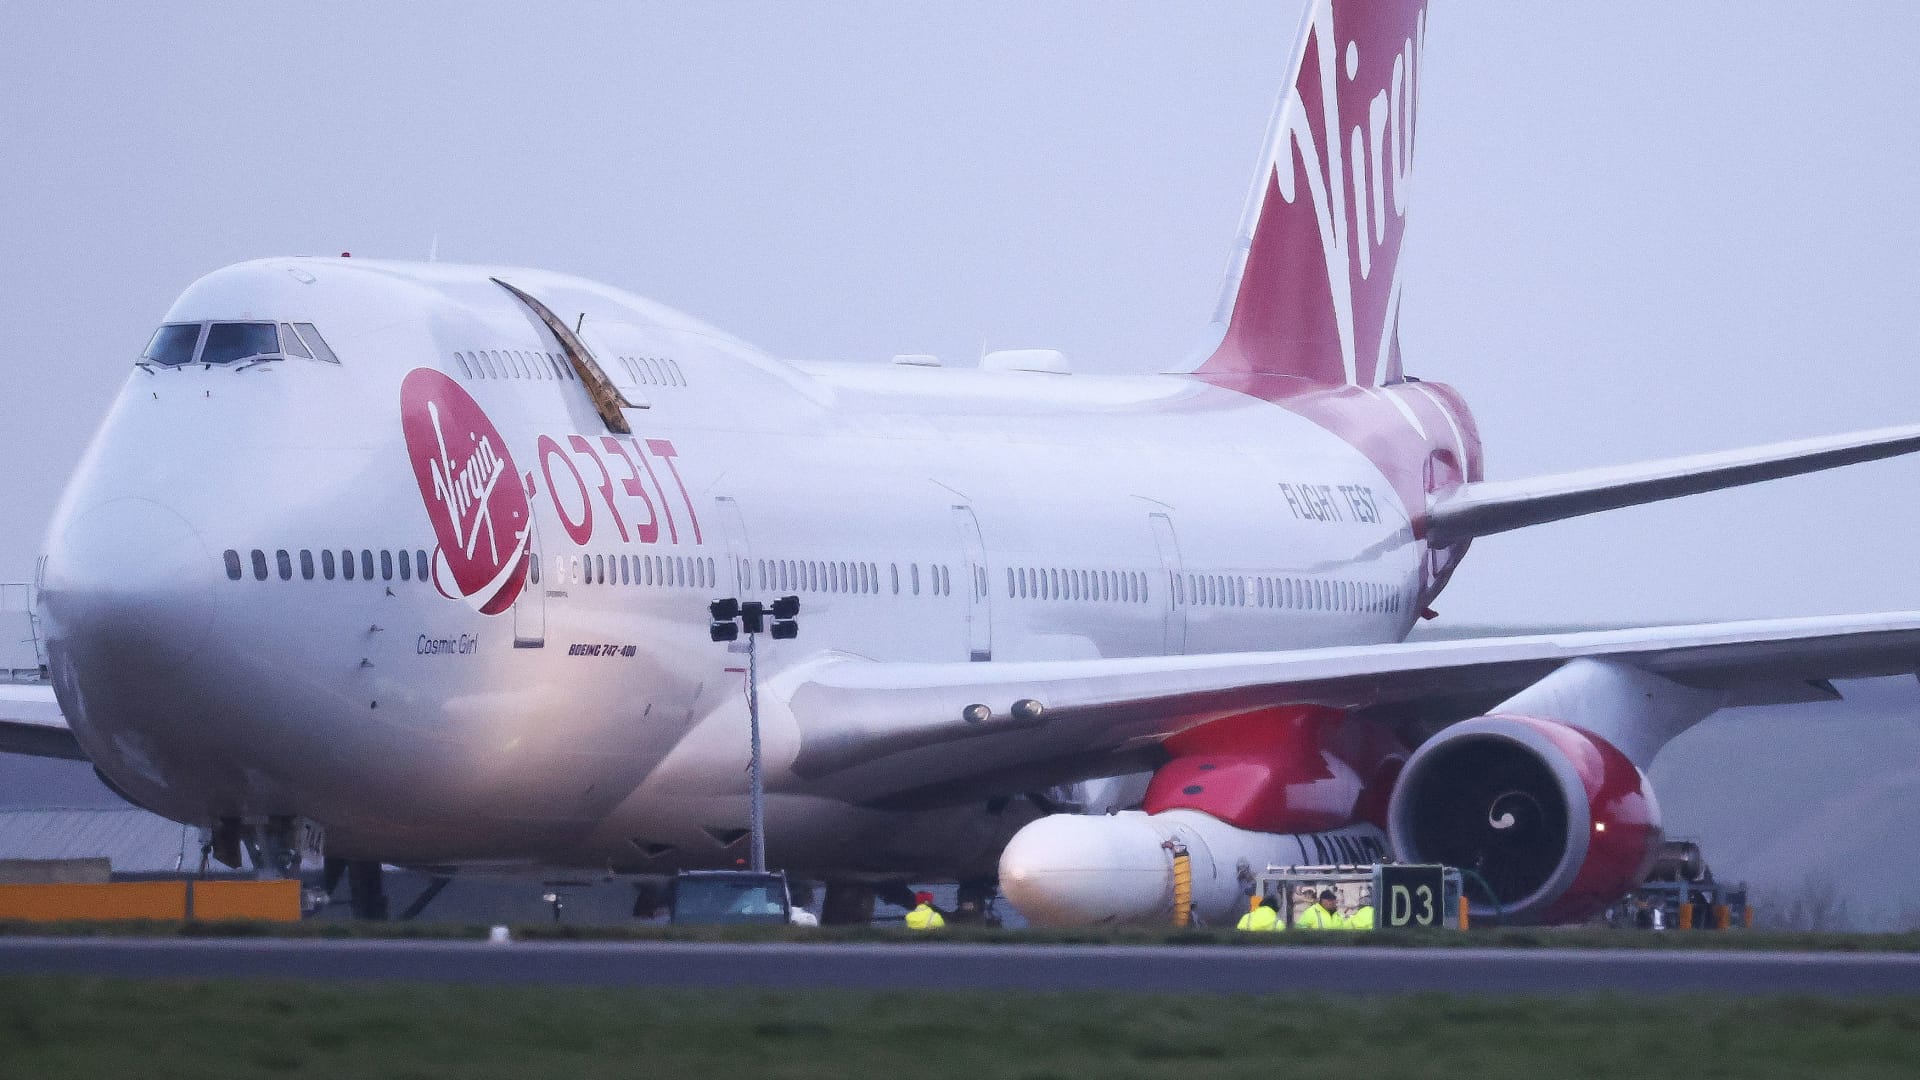 Saham Virgin Orbit turun setelah peluncuran di Inggris gagal